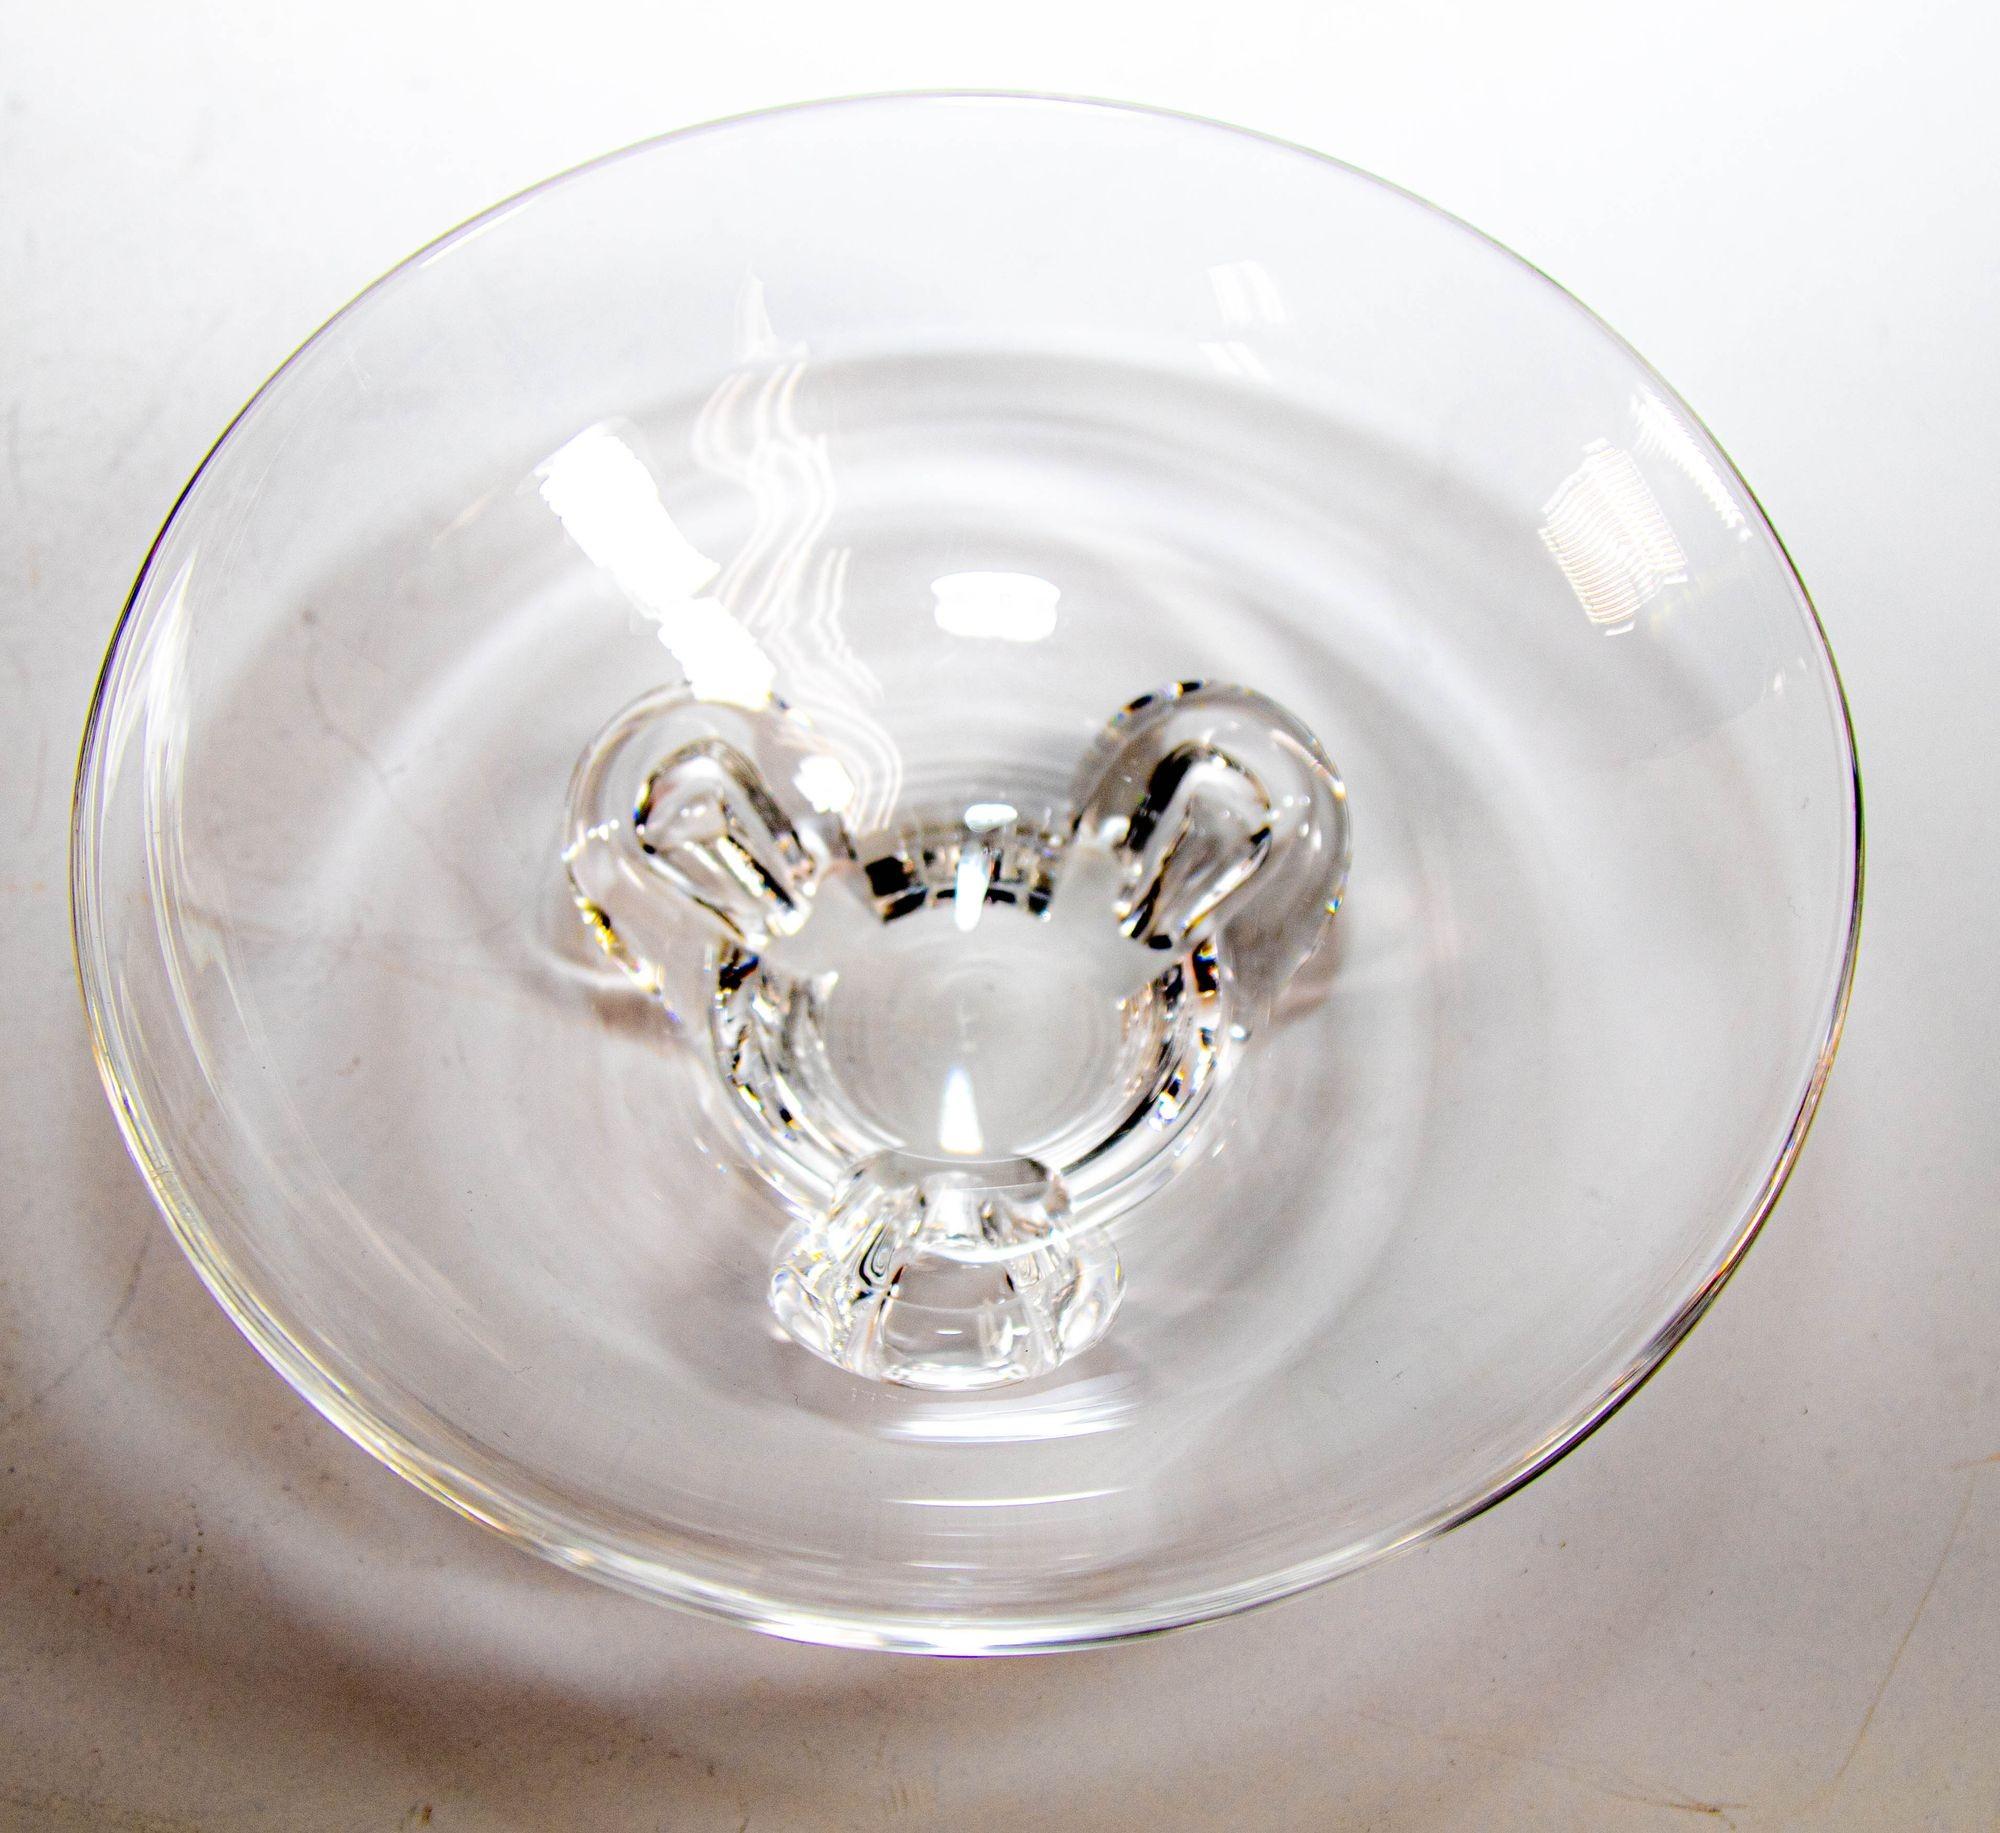 Vintage Crystal Clear Art Glass Steuben Bowl Dish.
Vintage Modern Crystal Clear Art Glass Floret Footed Bowl Signed Acid Etched Steuben.
Conçu par Steuben à la fin du 20e siècle, ce bol est un modèle intemporel de Steuben, parfait pour toute